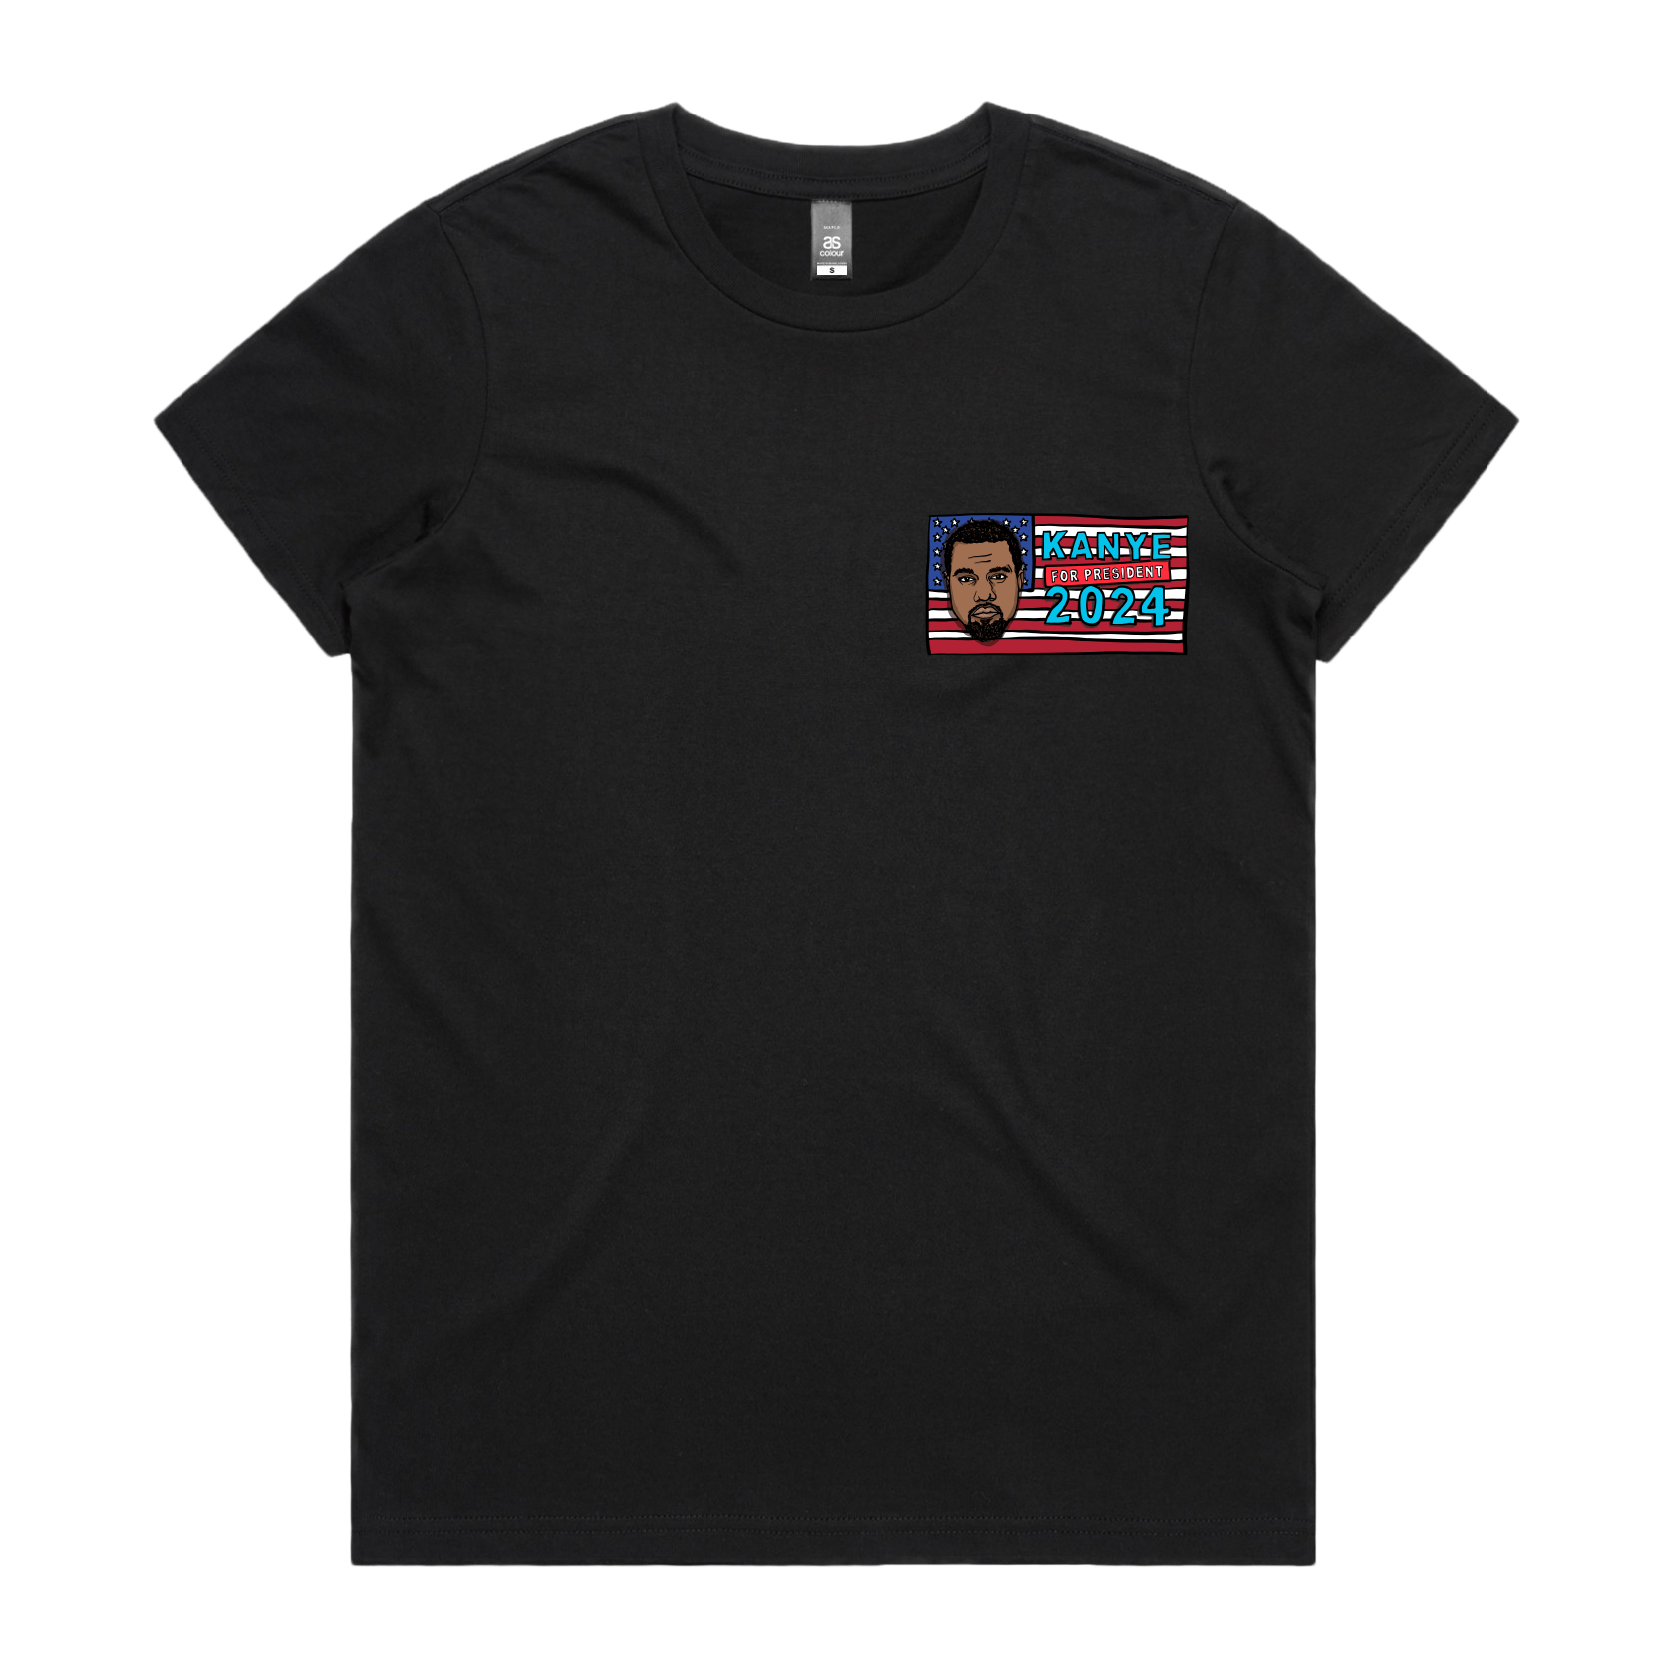 Kanye For President 2024 🗽 - Women's T Shirt